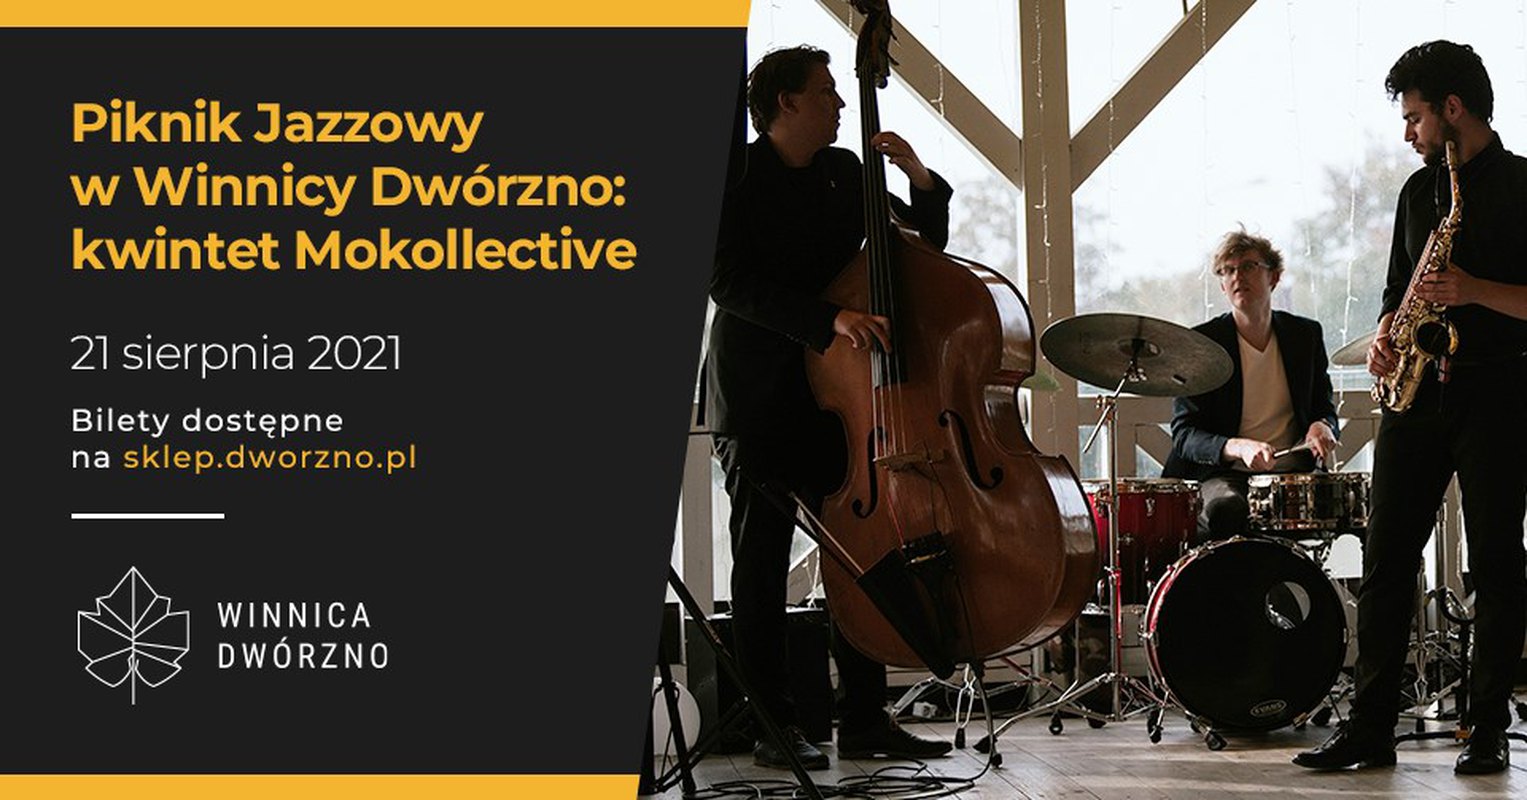 Piknik Jazzowy w Winnicy Dwórzno 21.08 - kwintet Mokollective + premiera wina